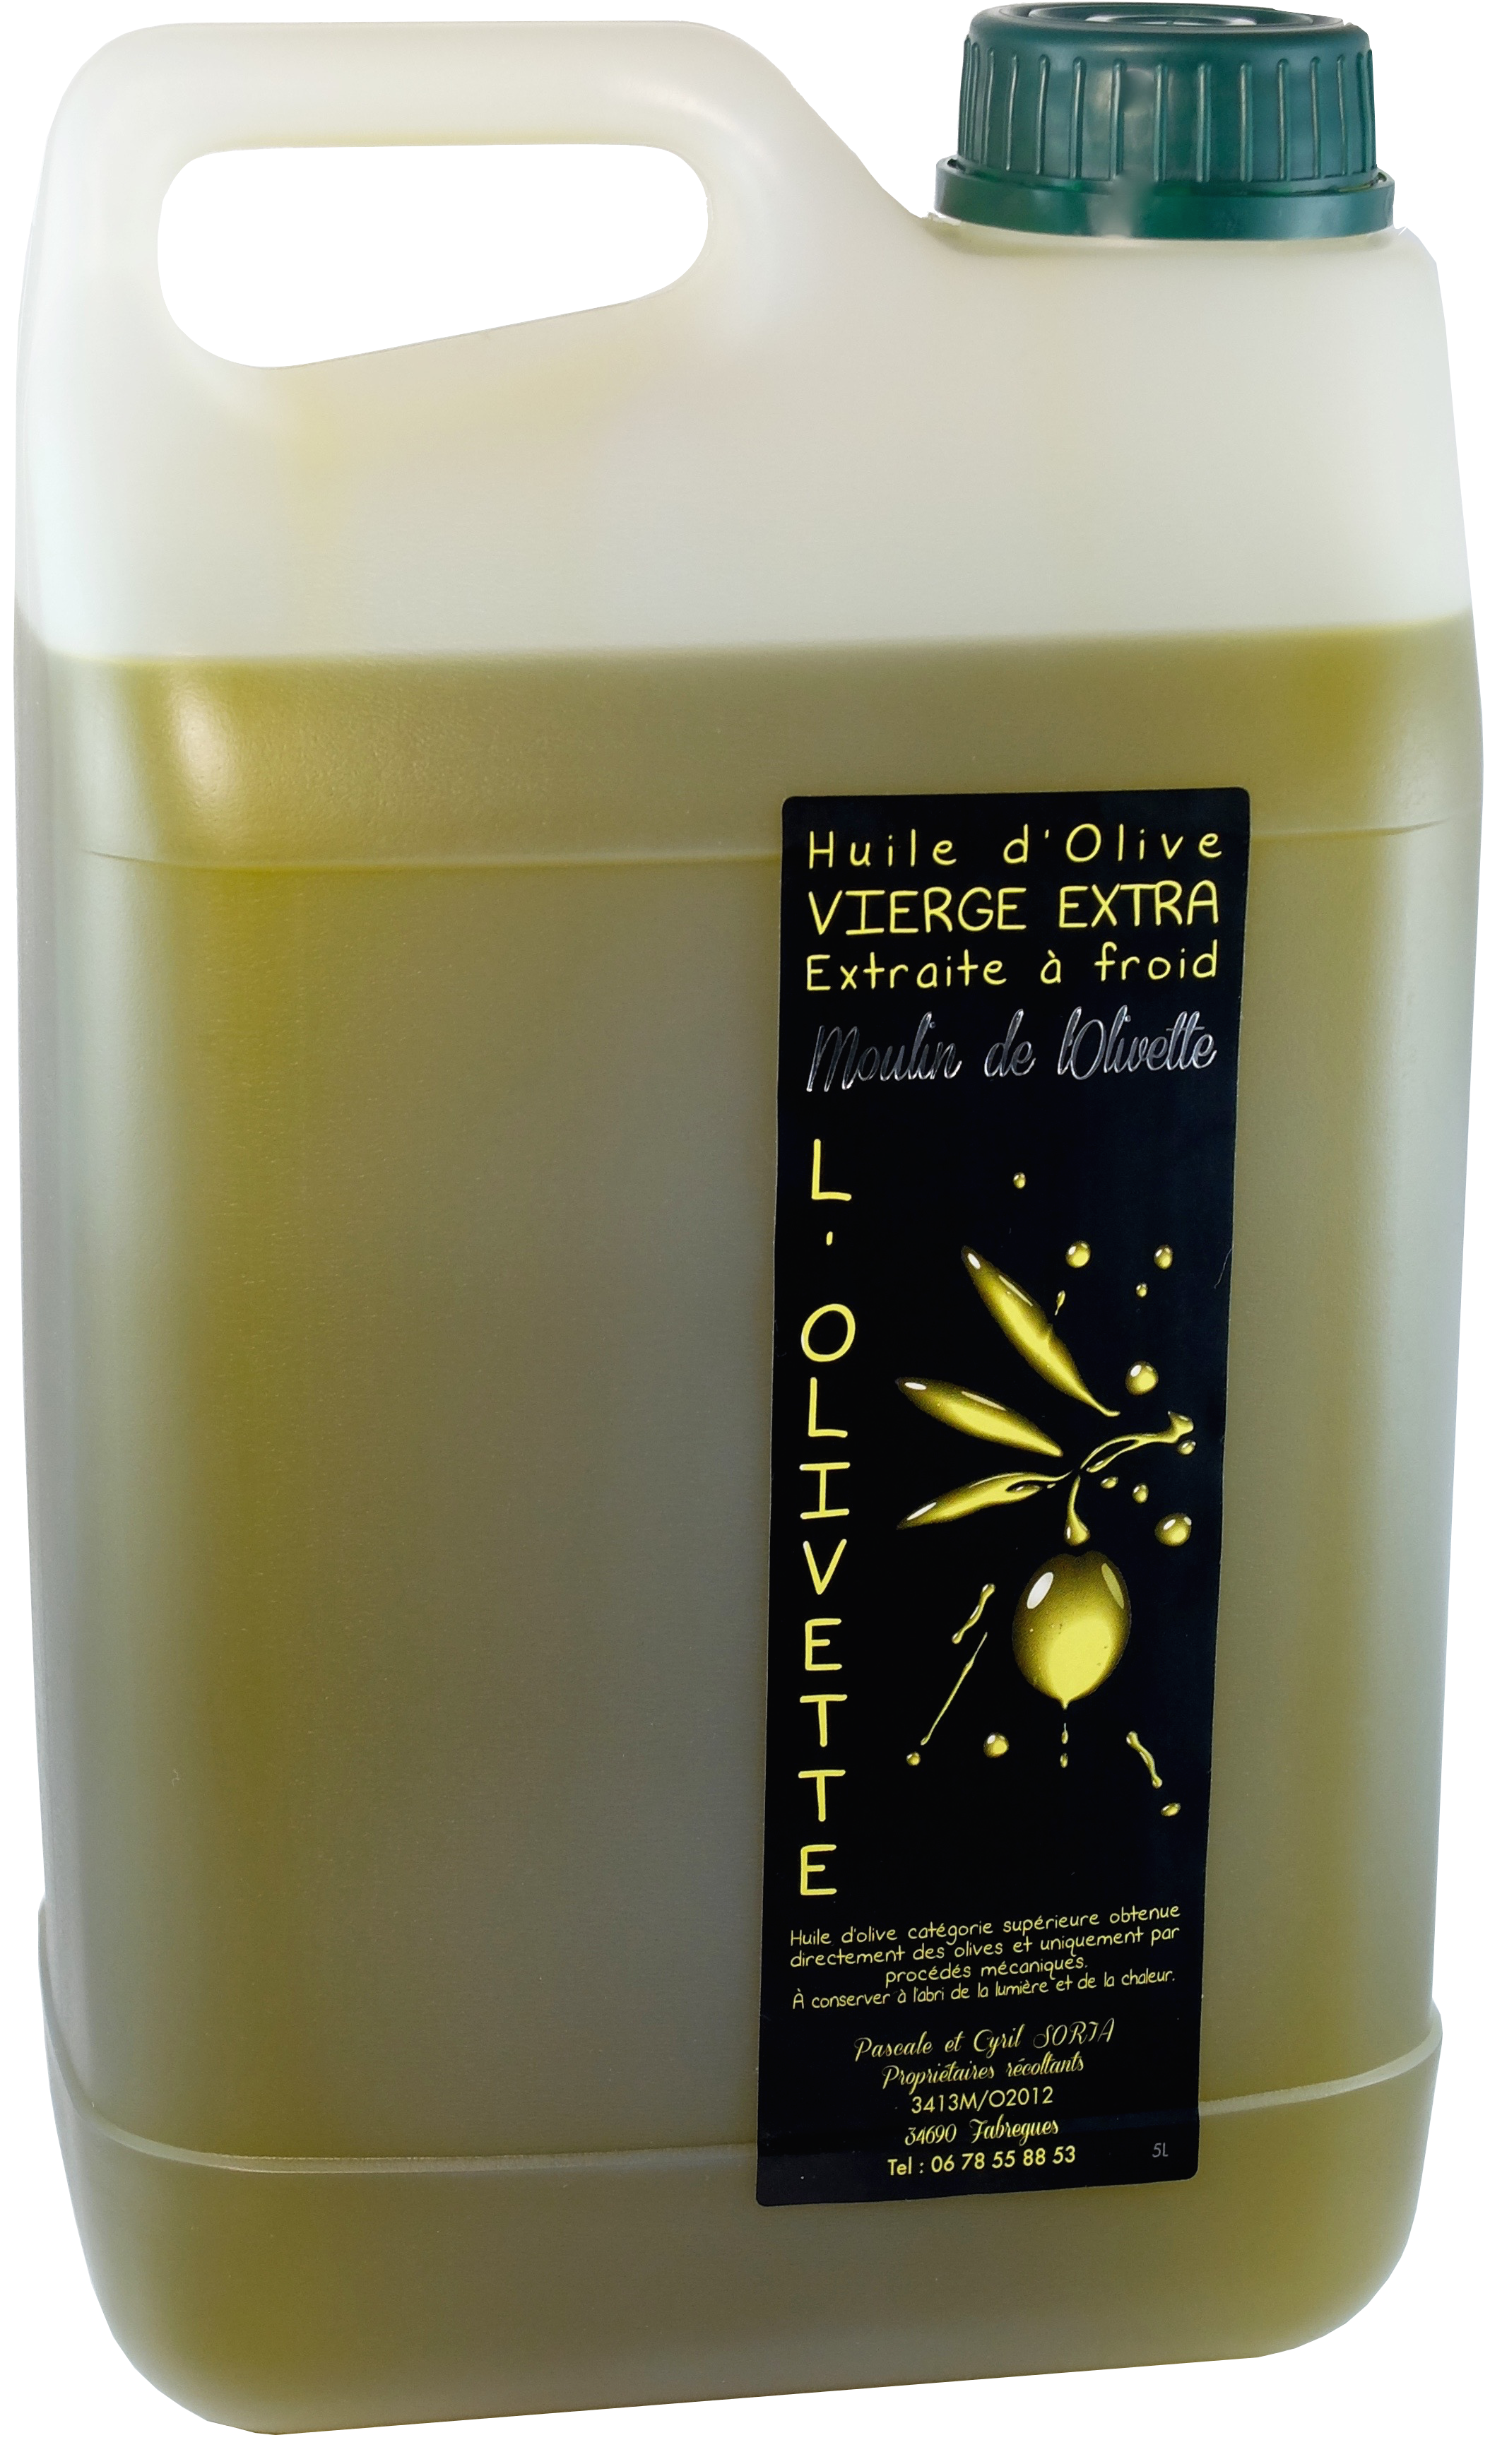 Huile d'olive extra vierge 1ère pression à froid - Bouteille céramique -  Felicilli